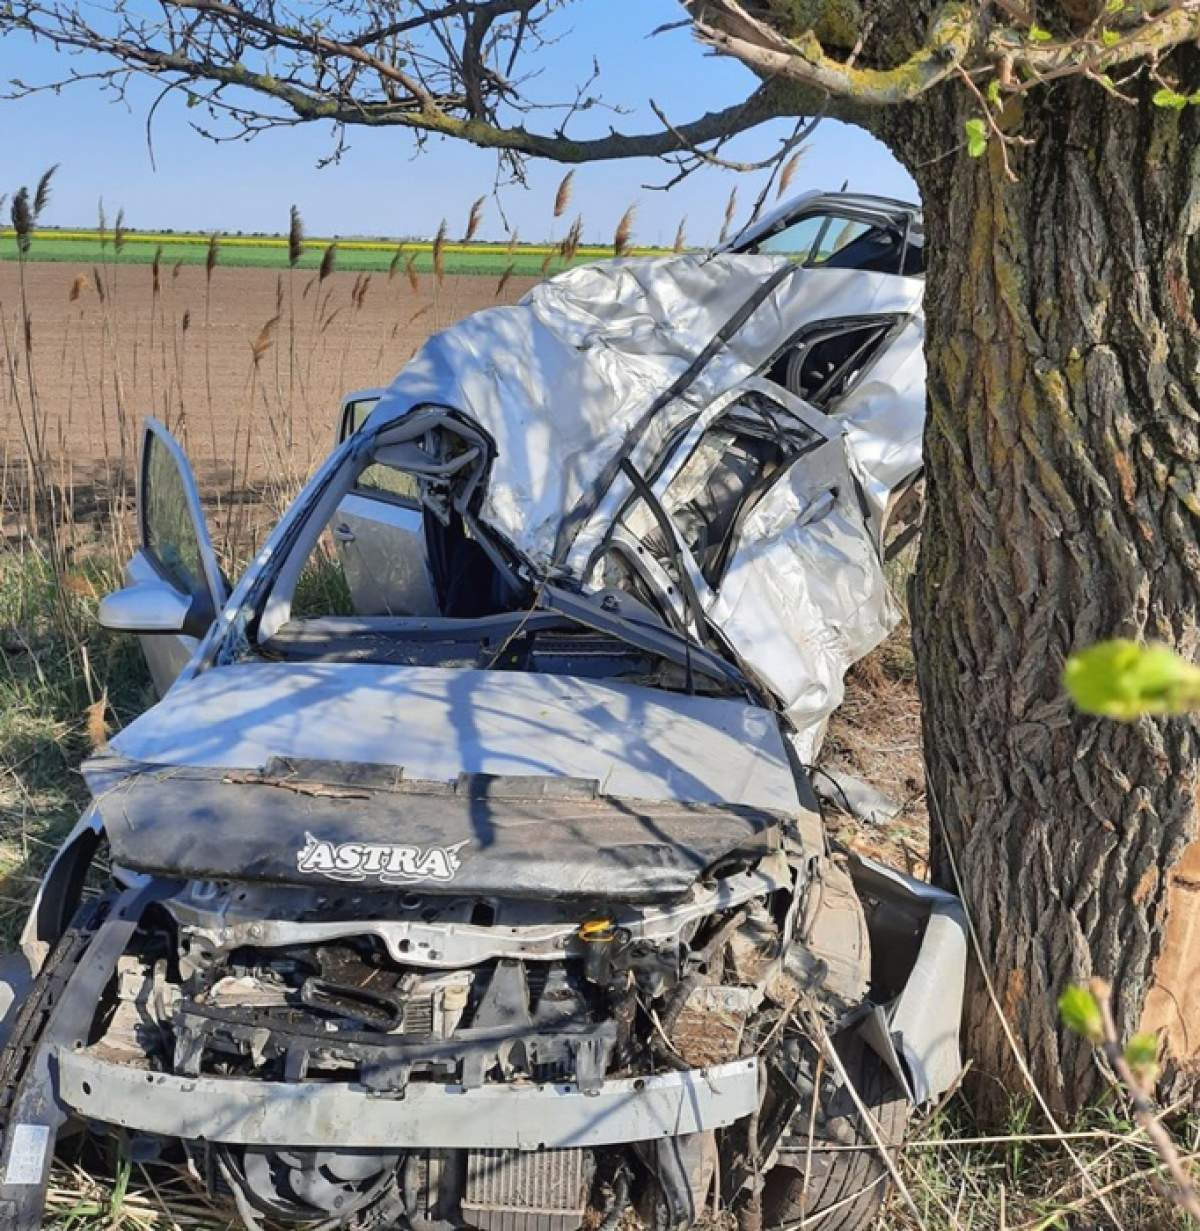 O secundă de neatenție a costat-o viața! O tânără șoferiță din Timiș a murit în urma unui accident rutier grav